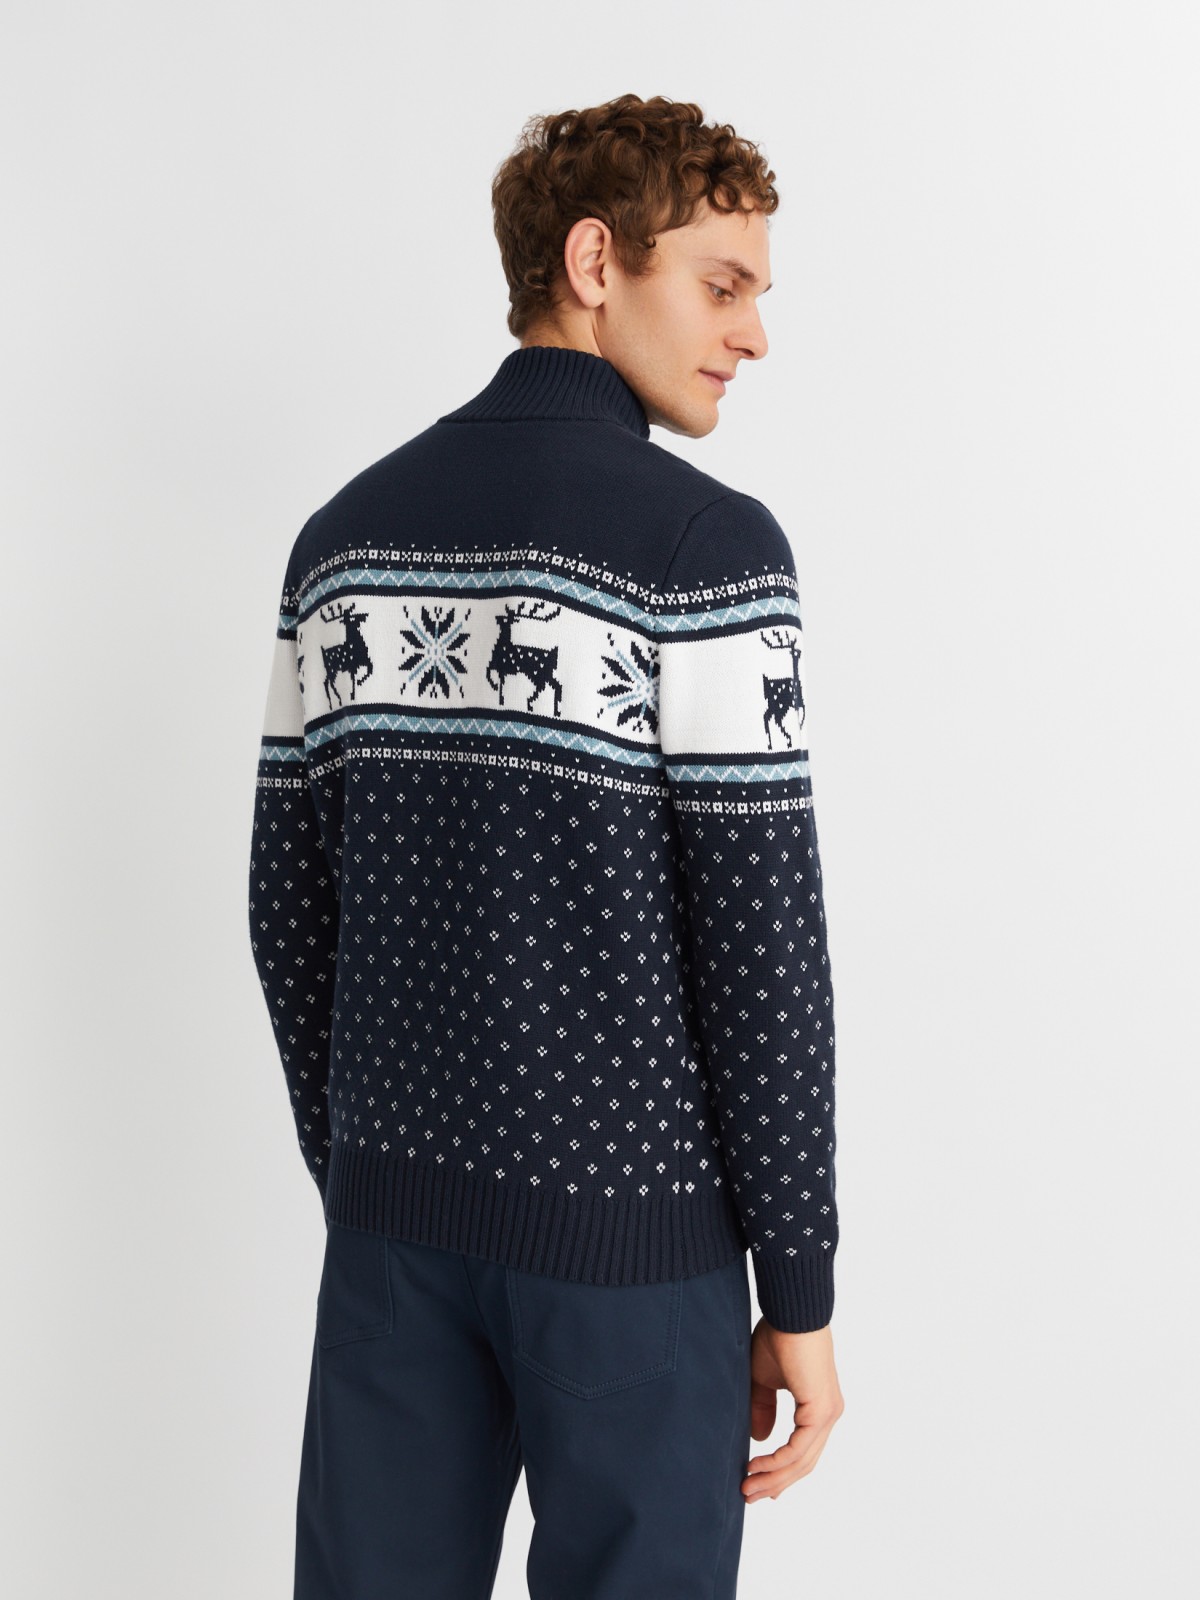 Вязаный свитер с воротником на молнии и скандинавским узором zolla 013436823043, цвет синий, размер M - фото 6